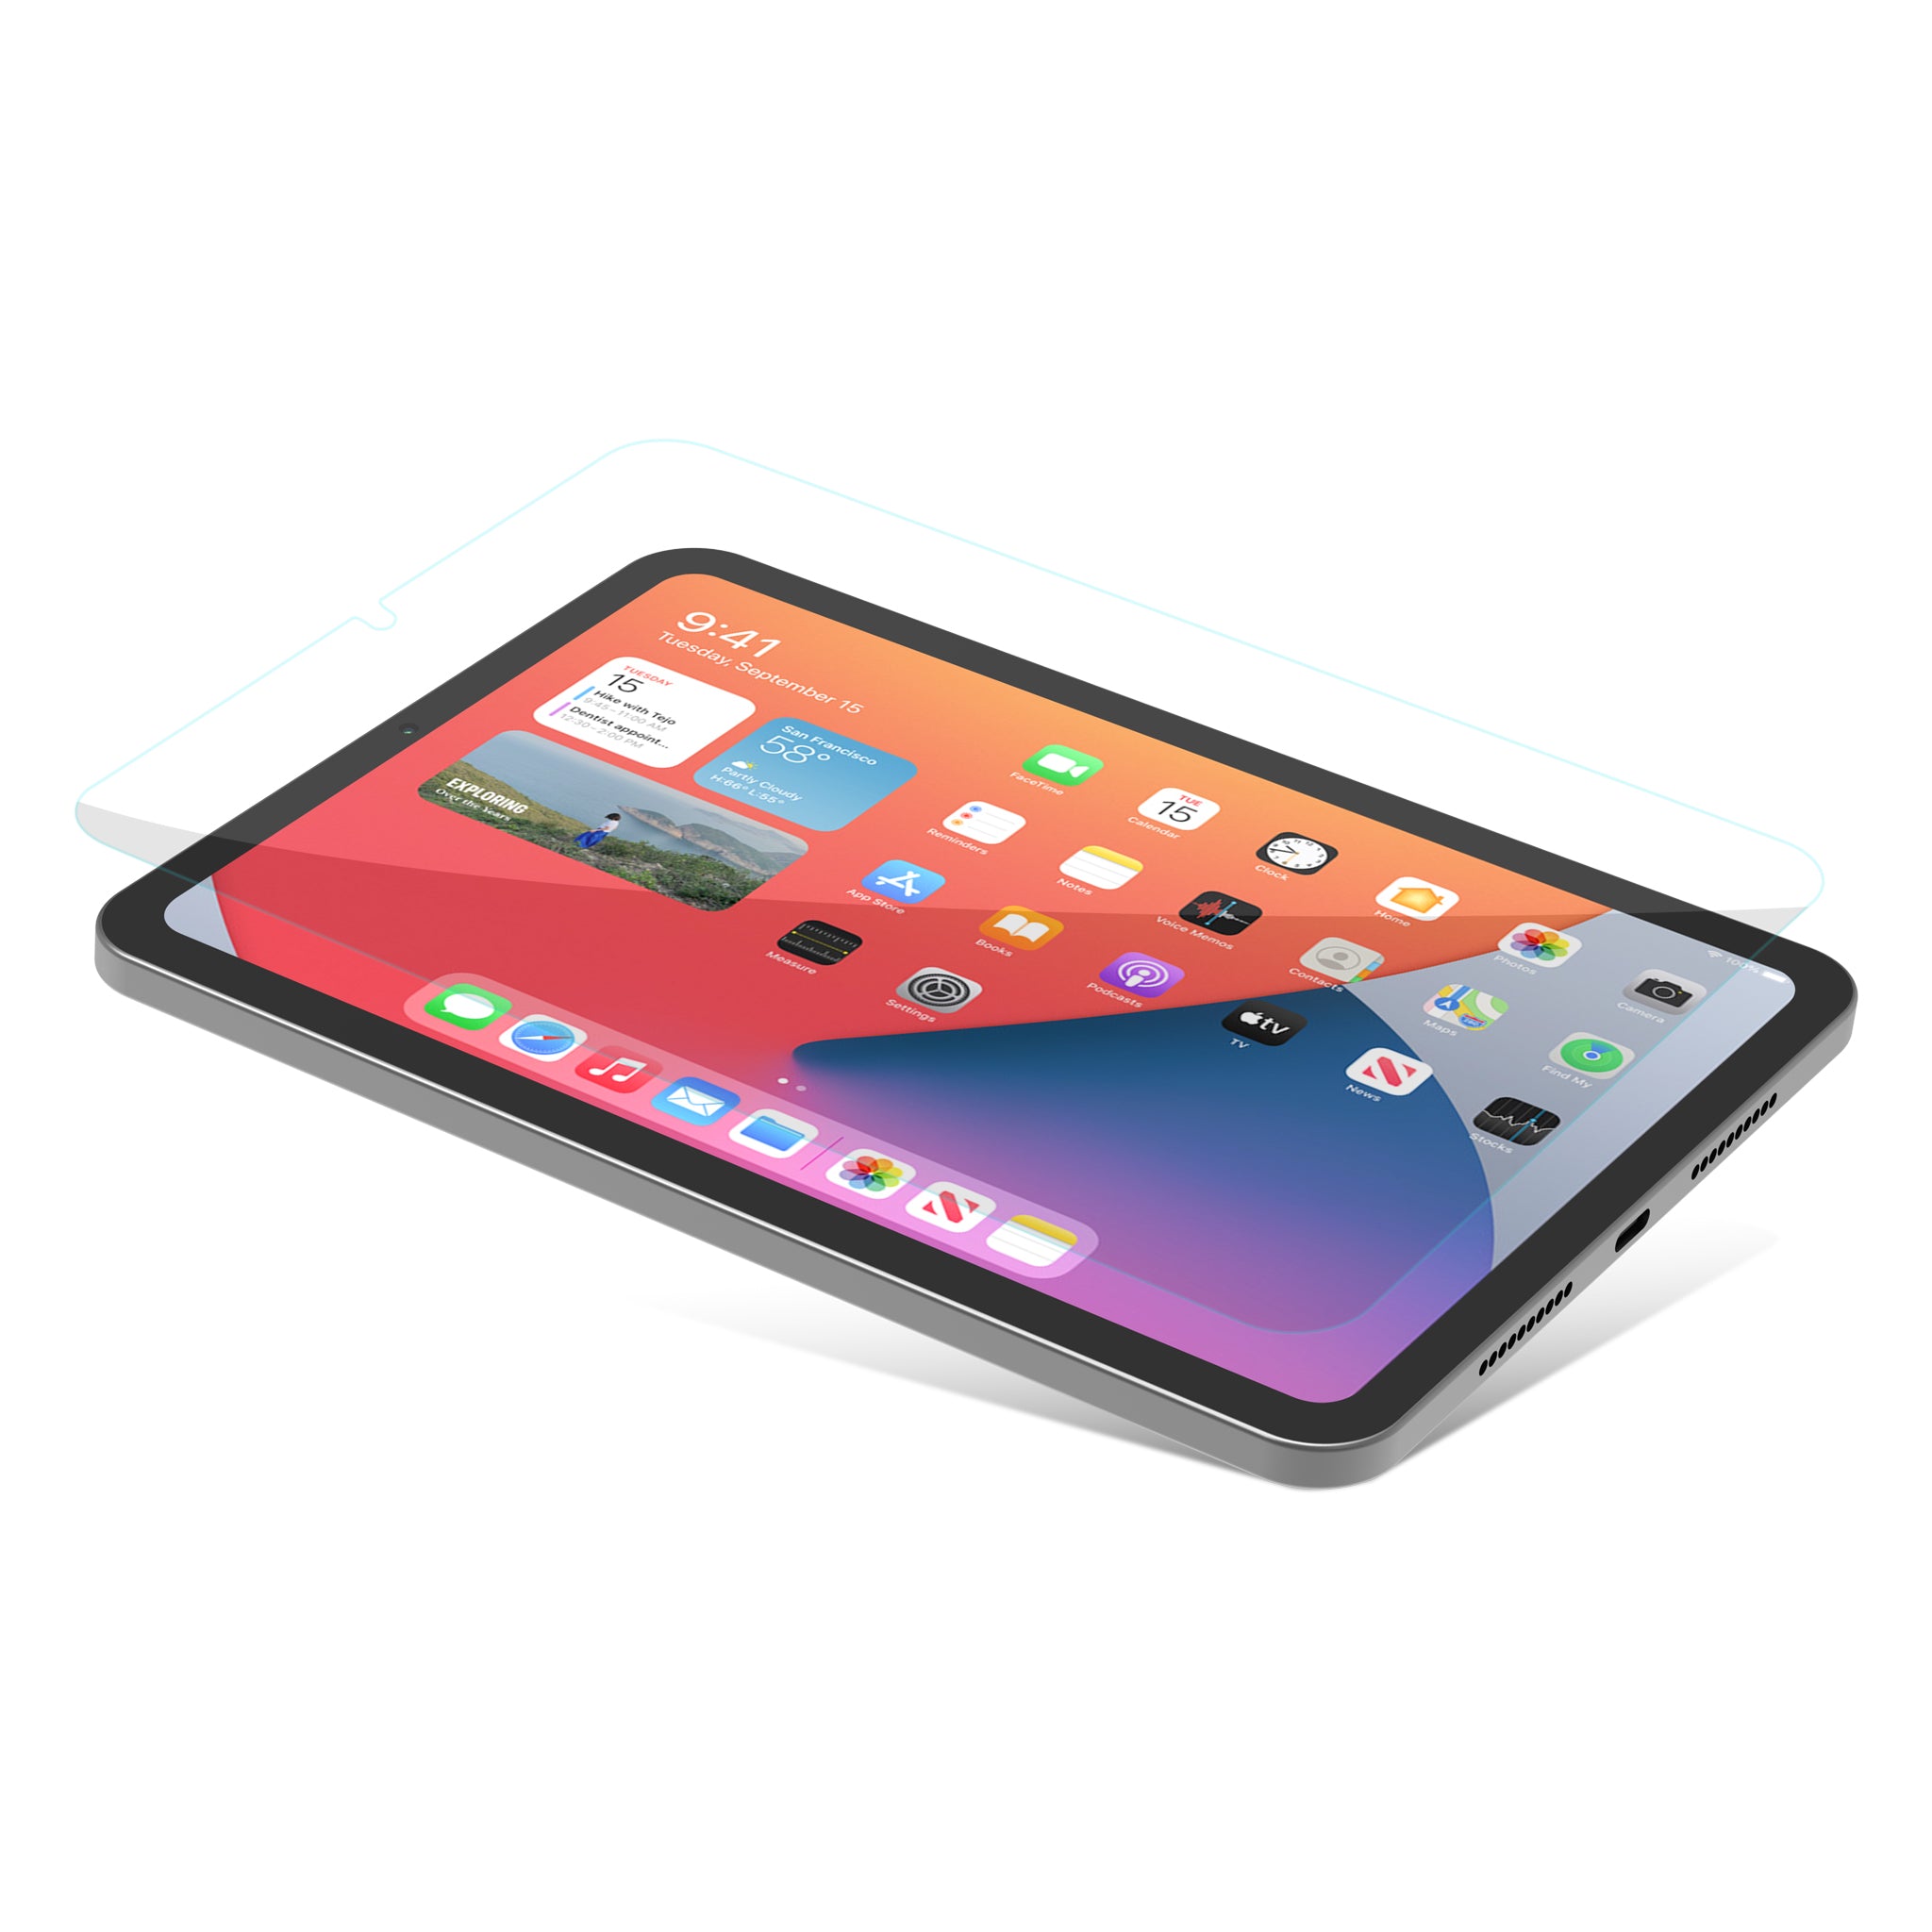 Protecteur d'écran en verre iClara pour iPad mini (2021 / 6e génération)